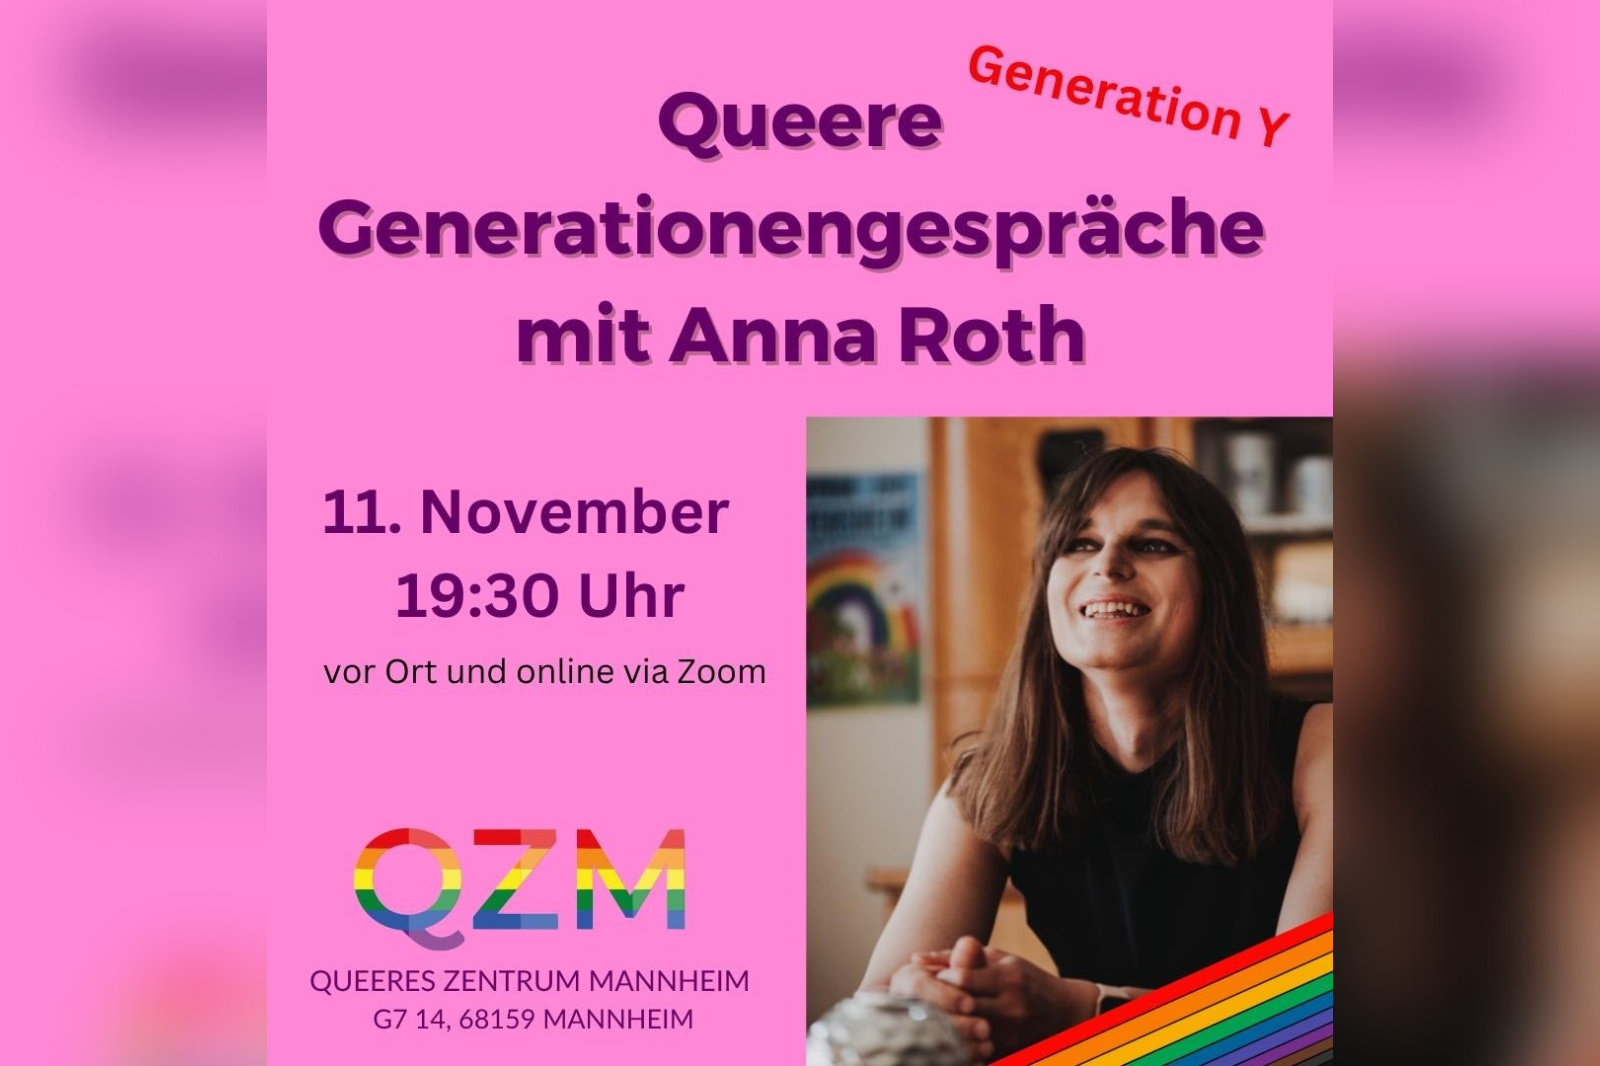 Queere Generationsgespräche mit Anna Roth. 11. November 19:30 Uhr. Rechts unten ist ein Bild von Anna eingefügt.